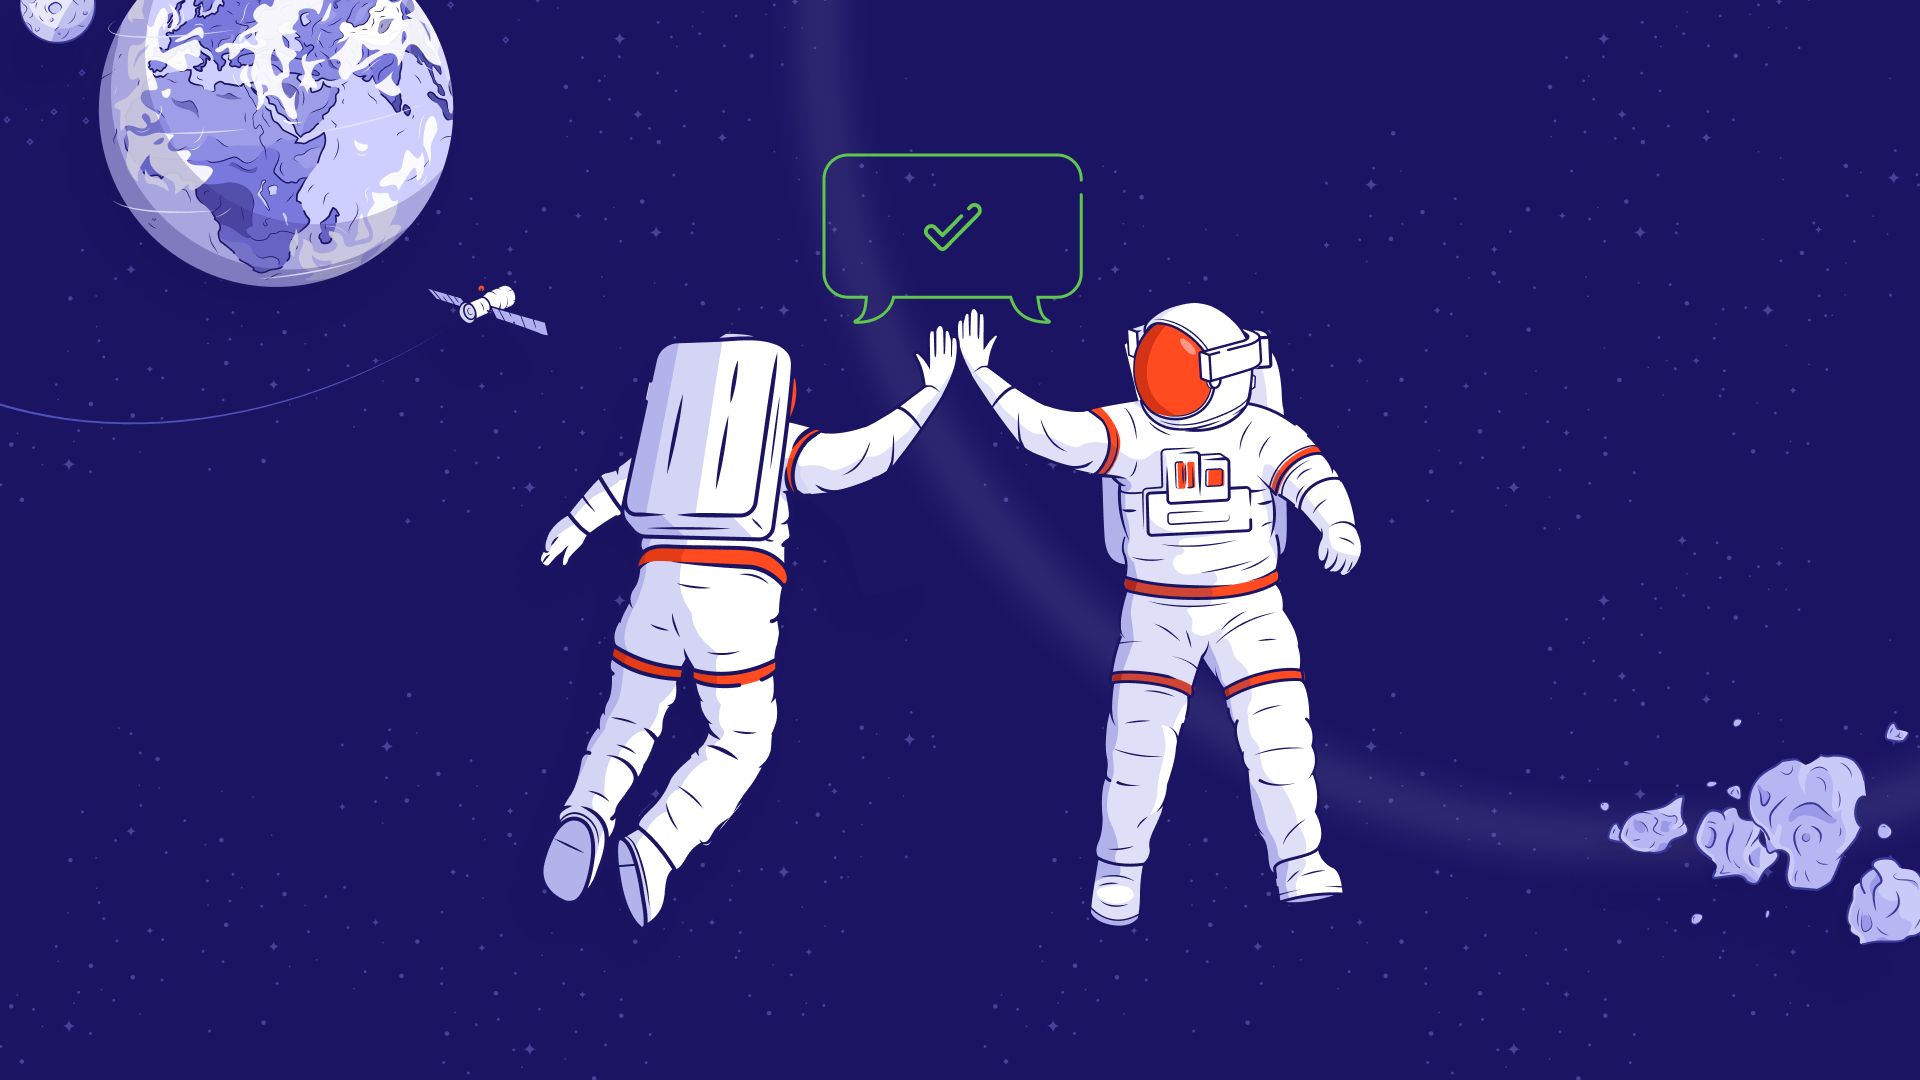 Ilustracja dwóch astronautów przybijających piątkę w kosmosie.